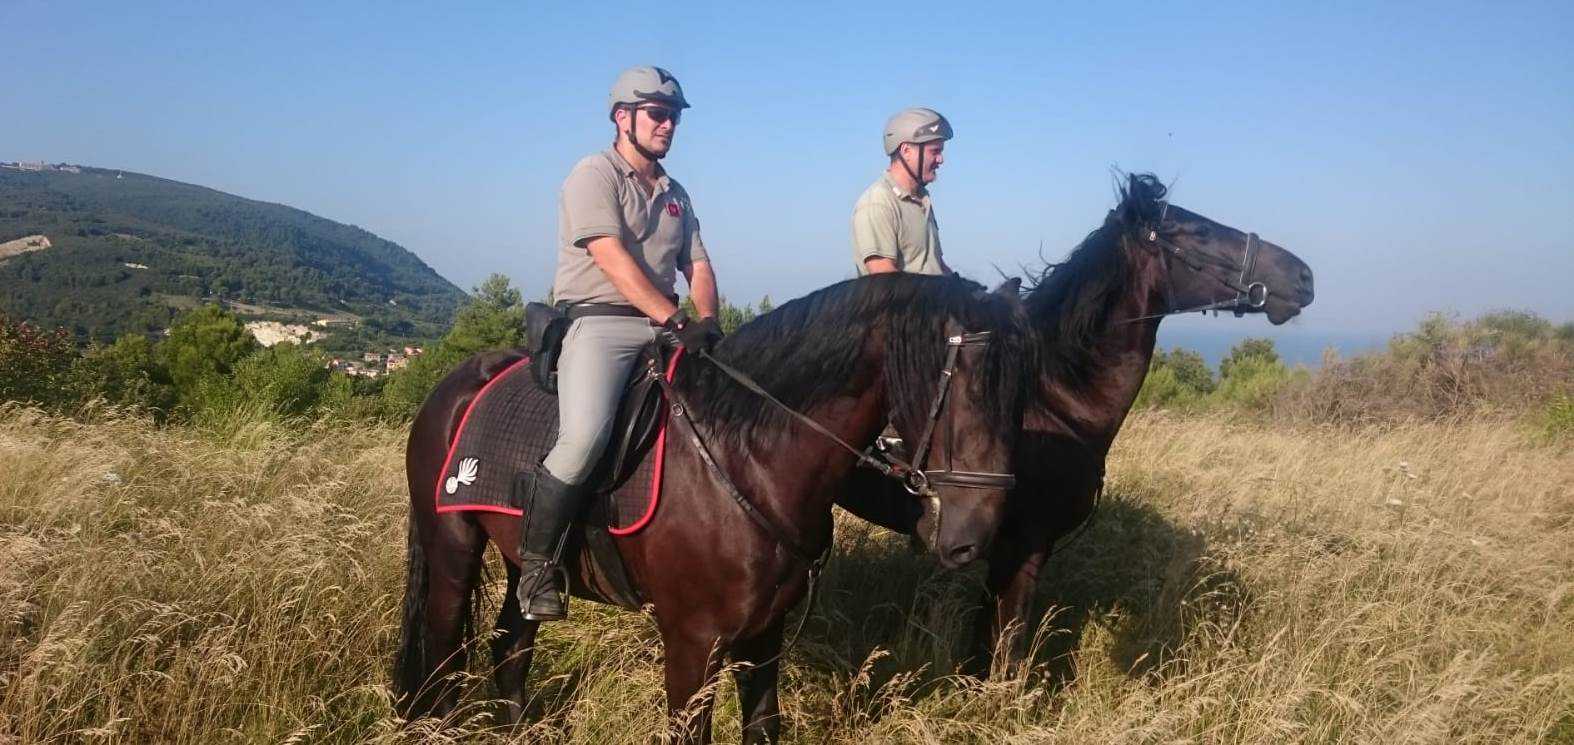 Carabinieri Forestali a Cavallo sul Monte Conero